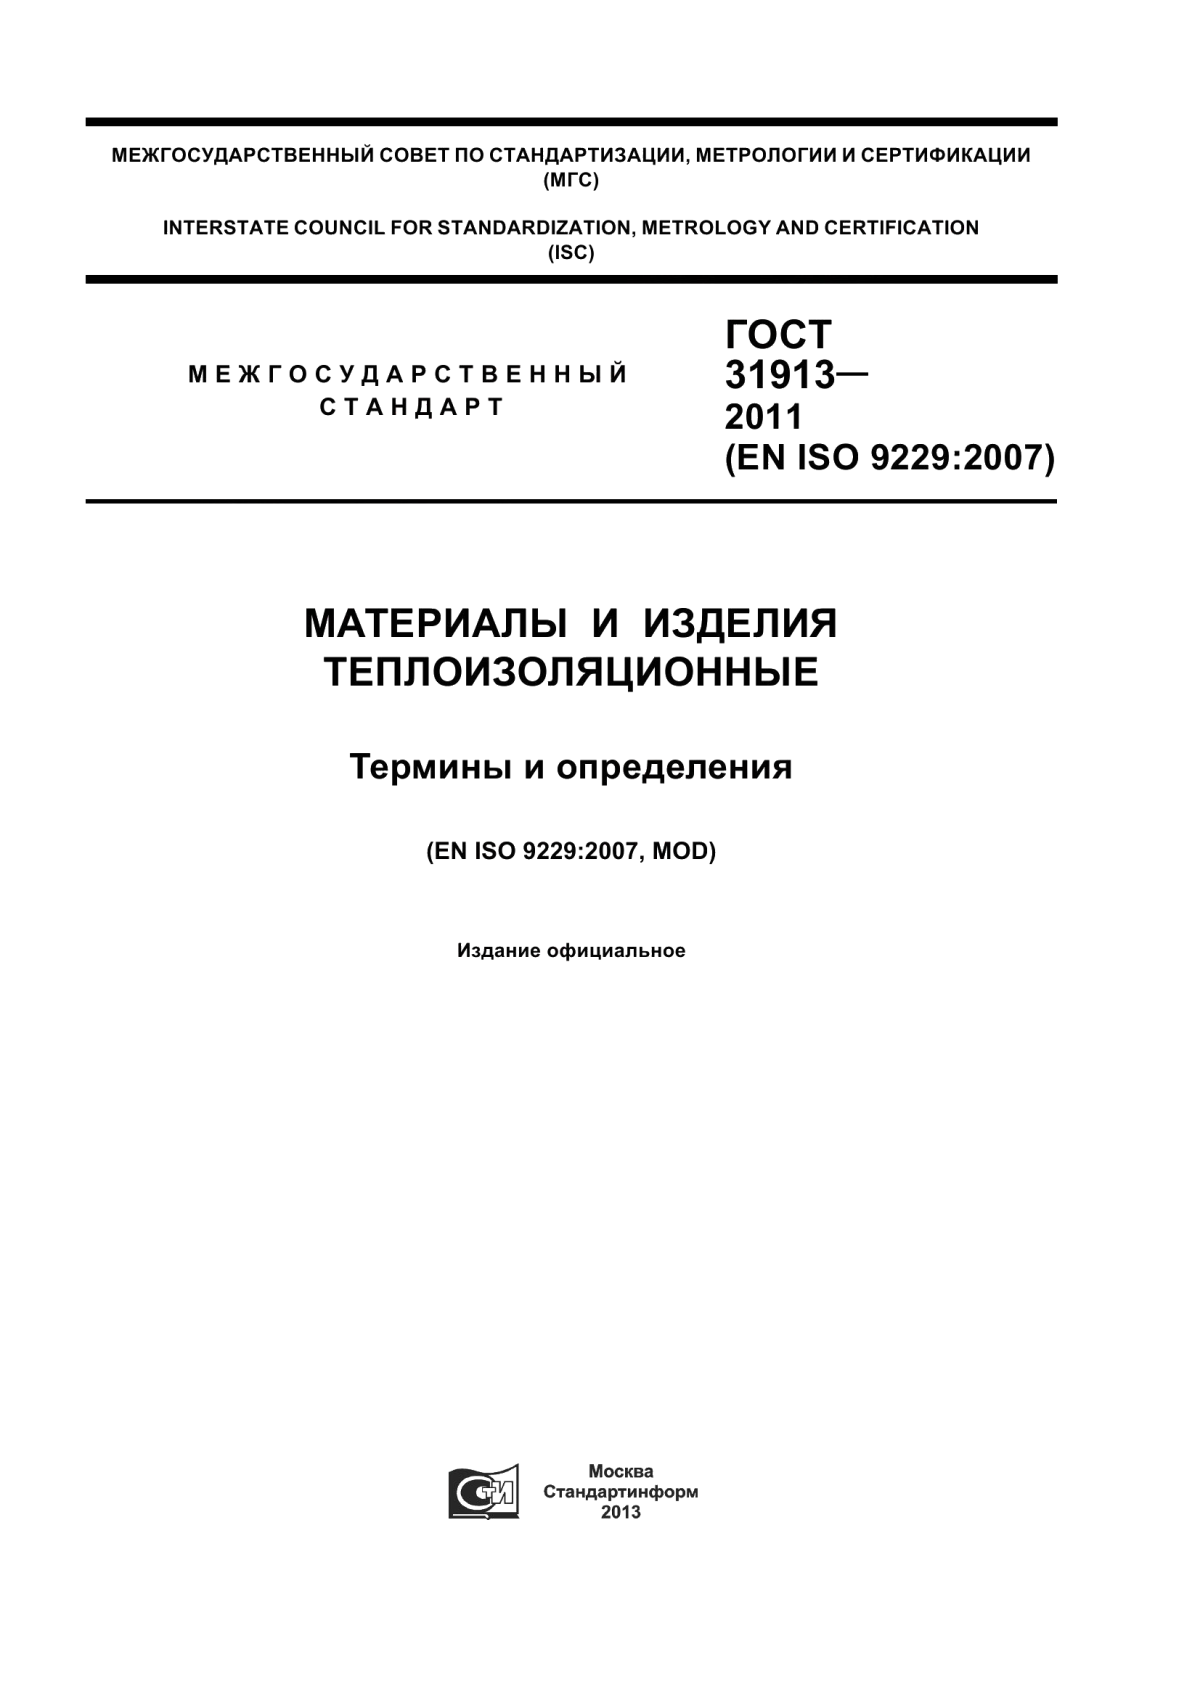 ГОСТ 31913-2011 Материалы и изделия теплоизоляционные. Термины и определения